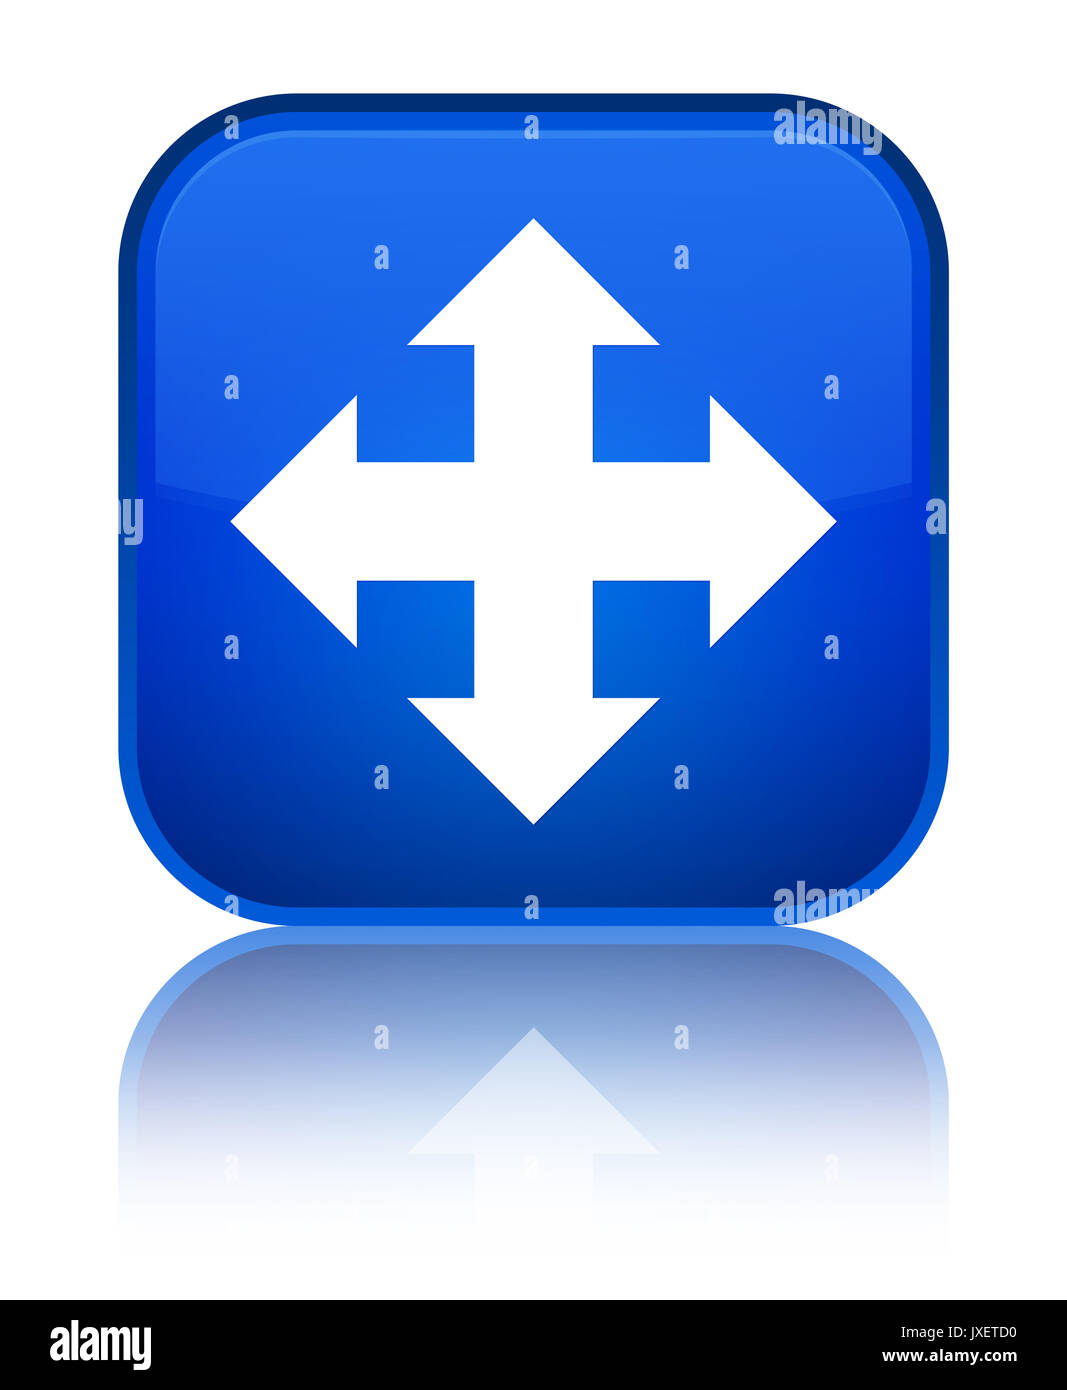 L'icône Déplacer isolé sur le bouton carré bleu spécial reflétée résumé illustration Banque D'Images